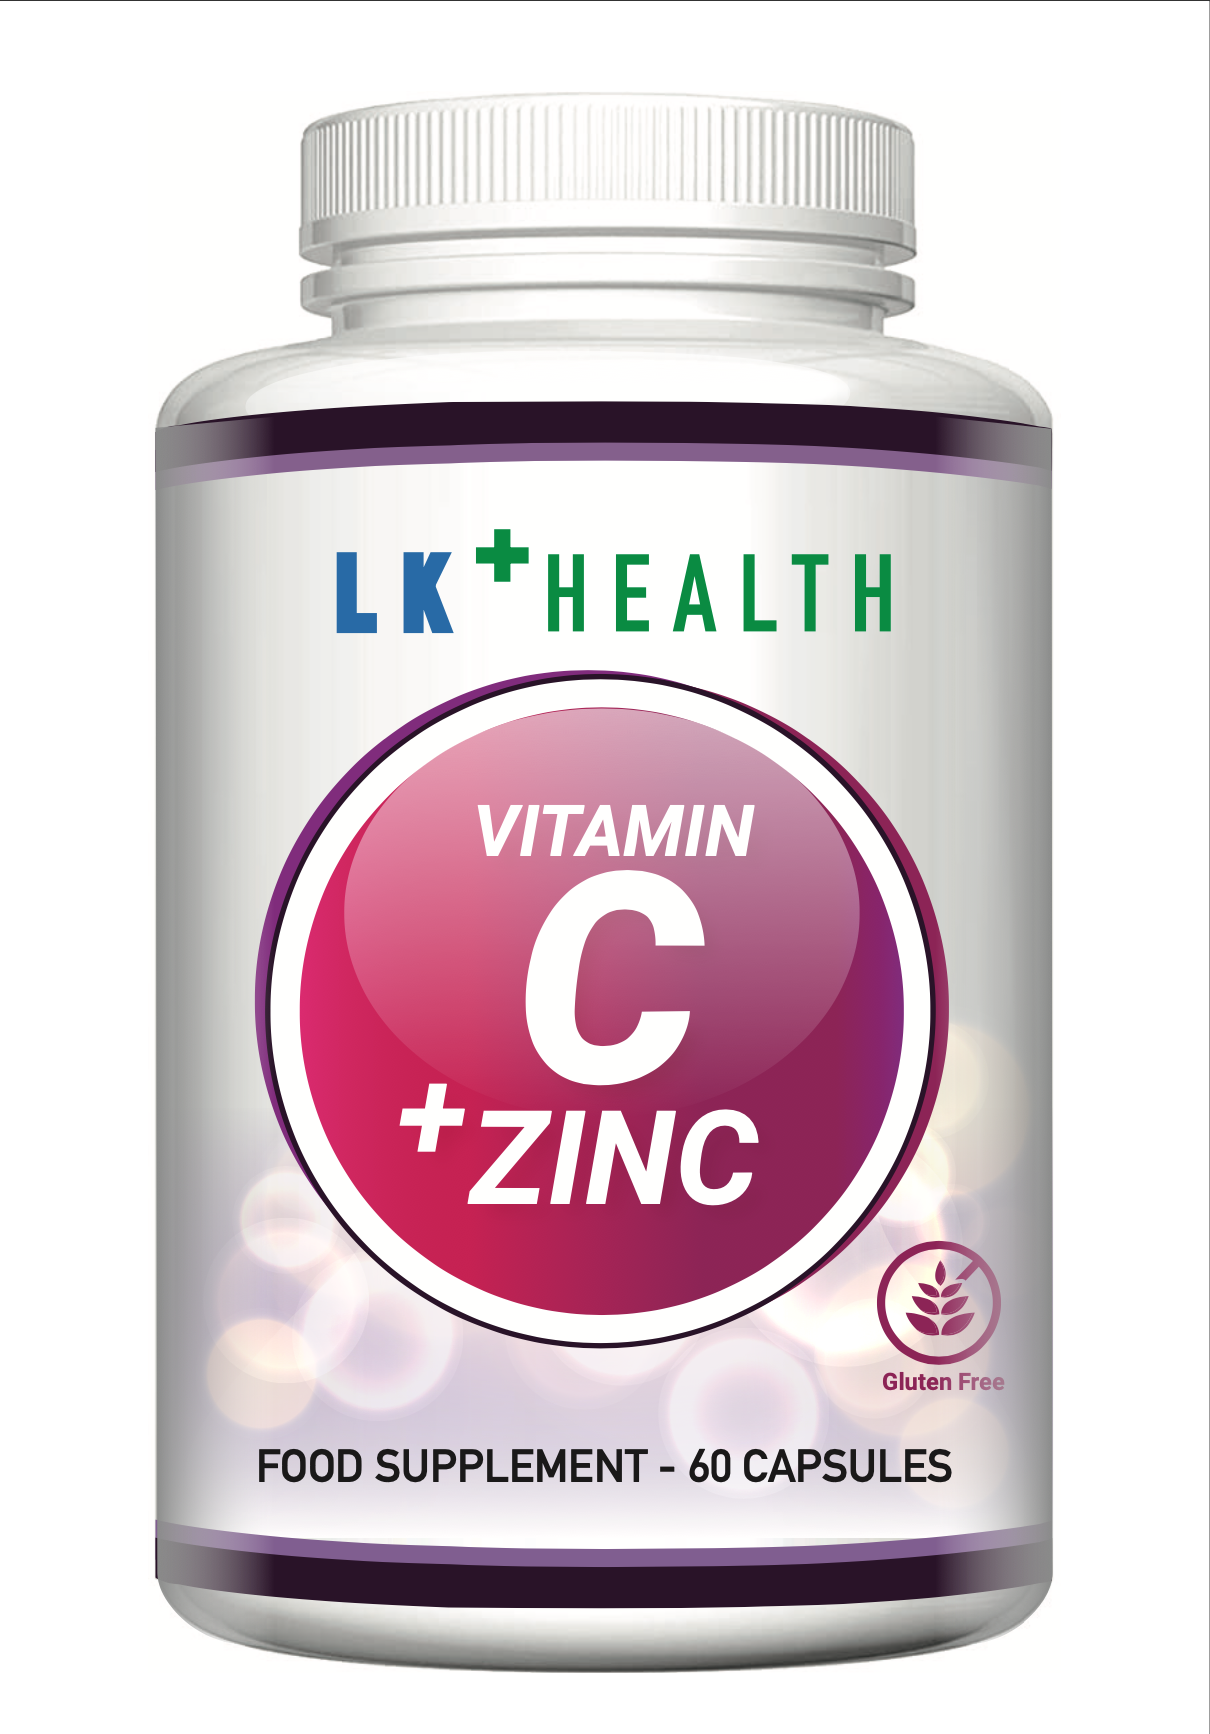 Vitamin C + Zinc - 60 Capsules